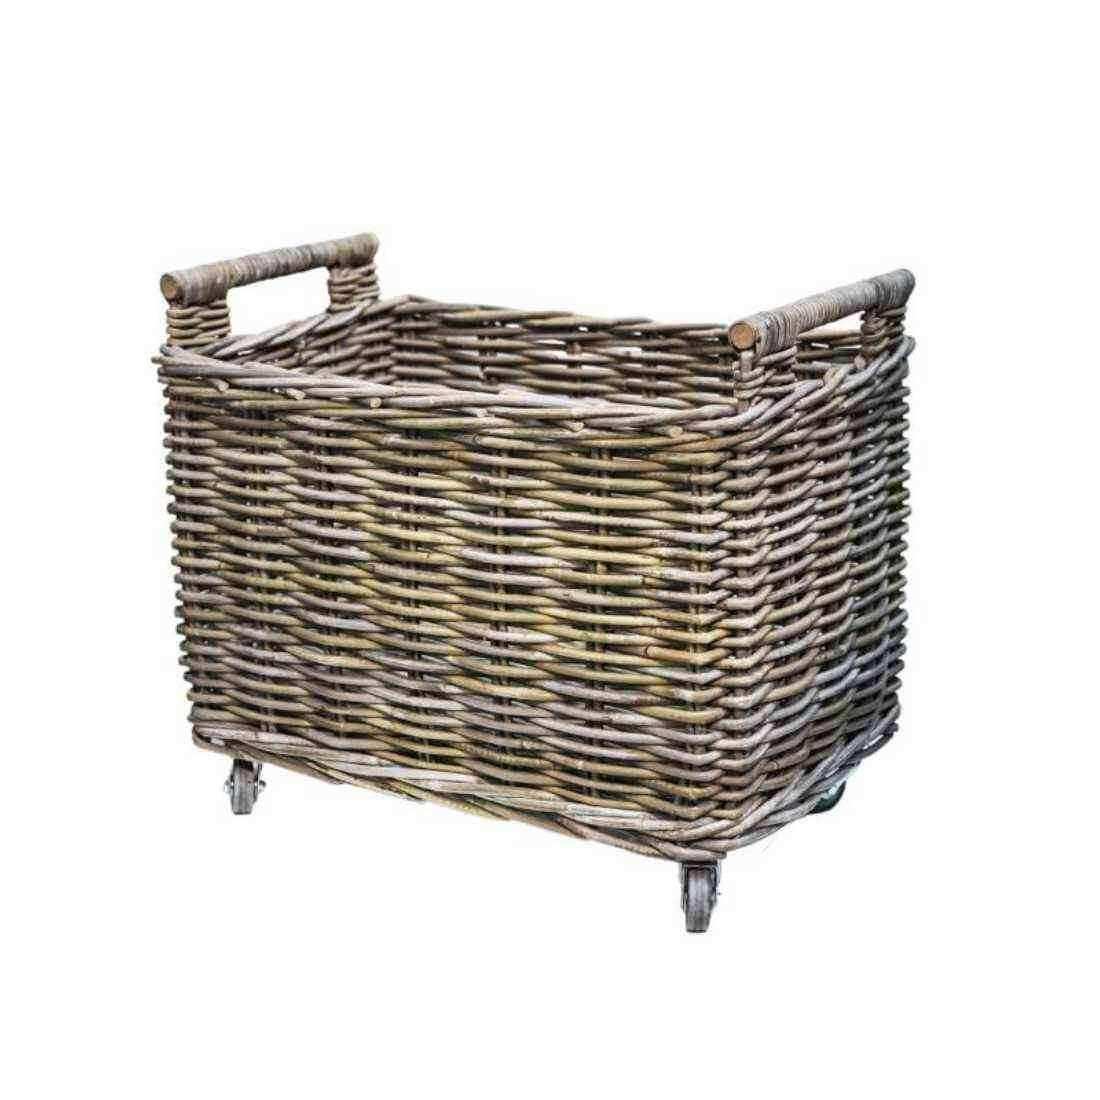 Wheeled Rattan Log Basket - The Farthing